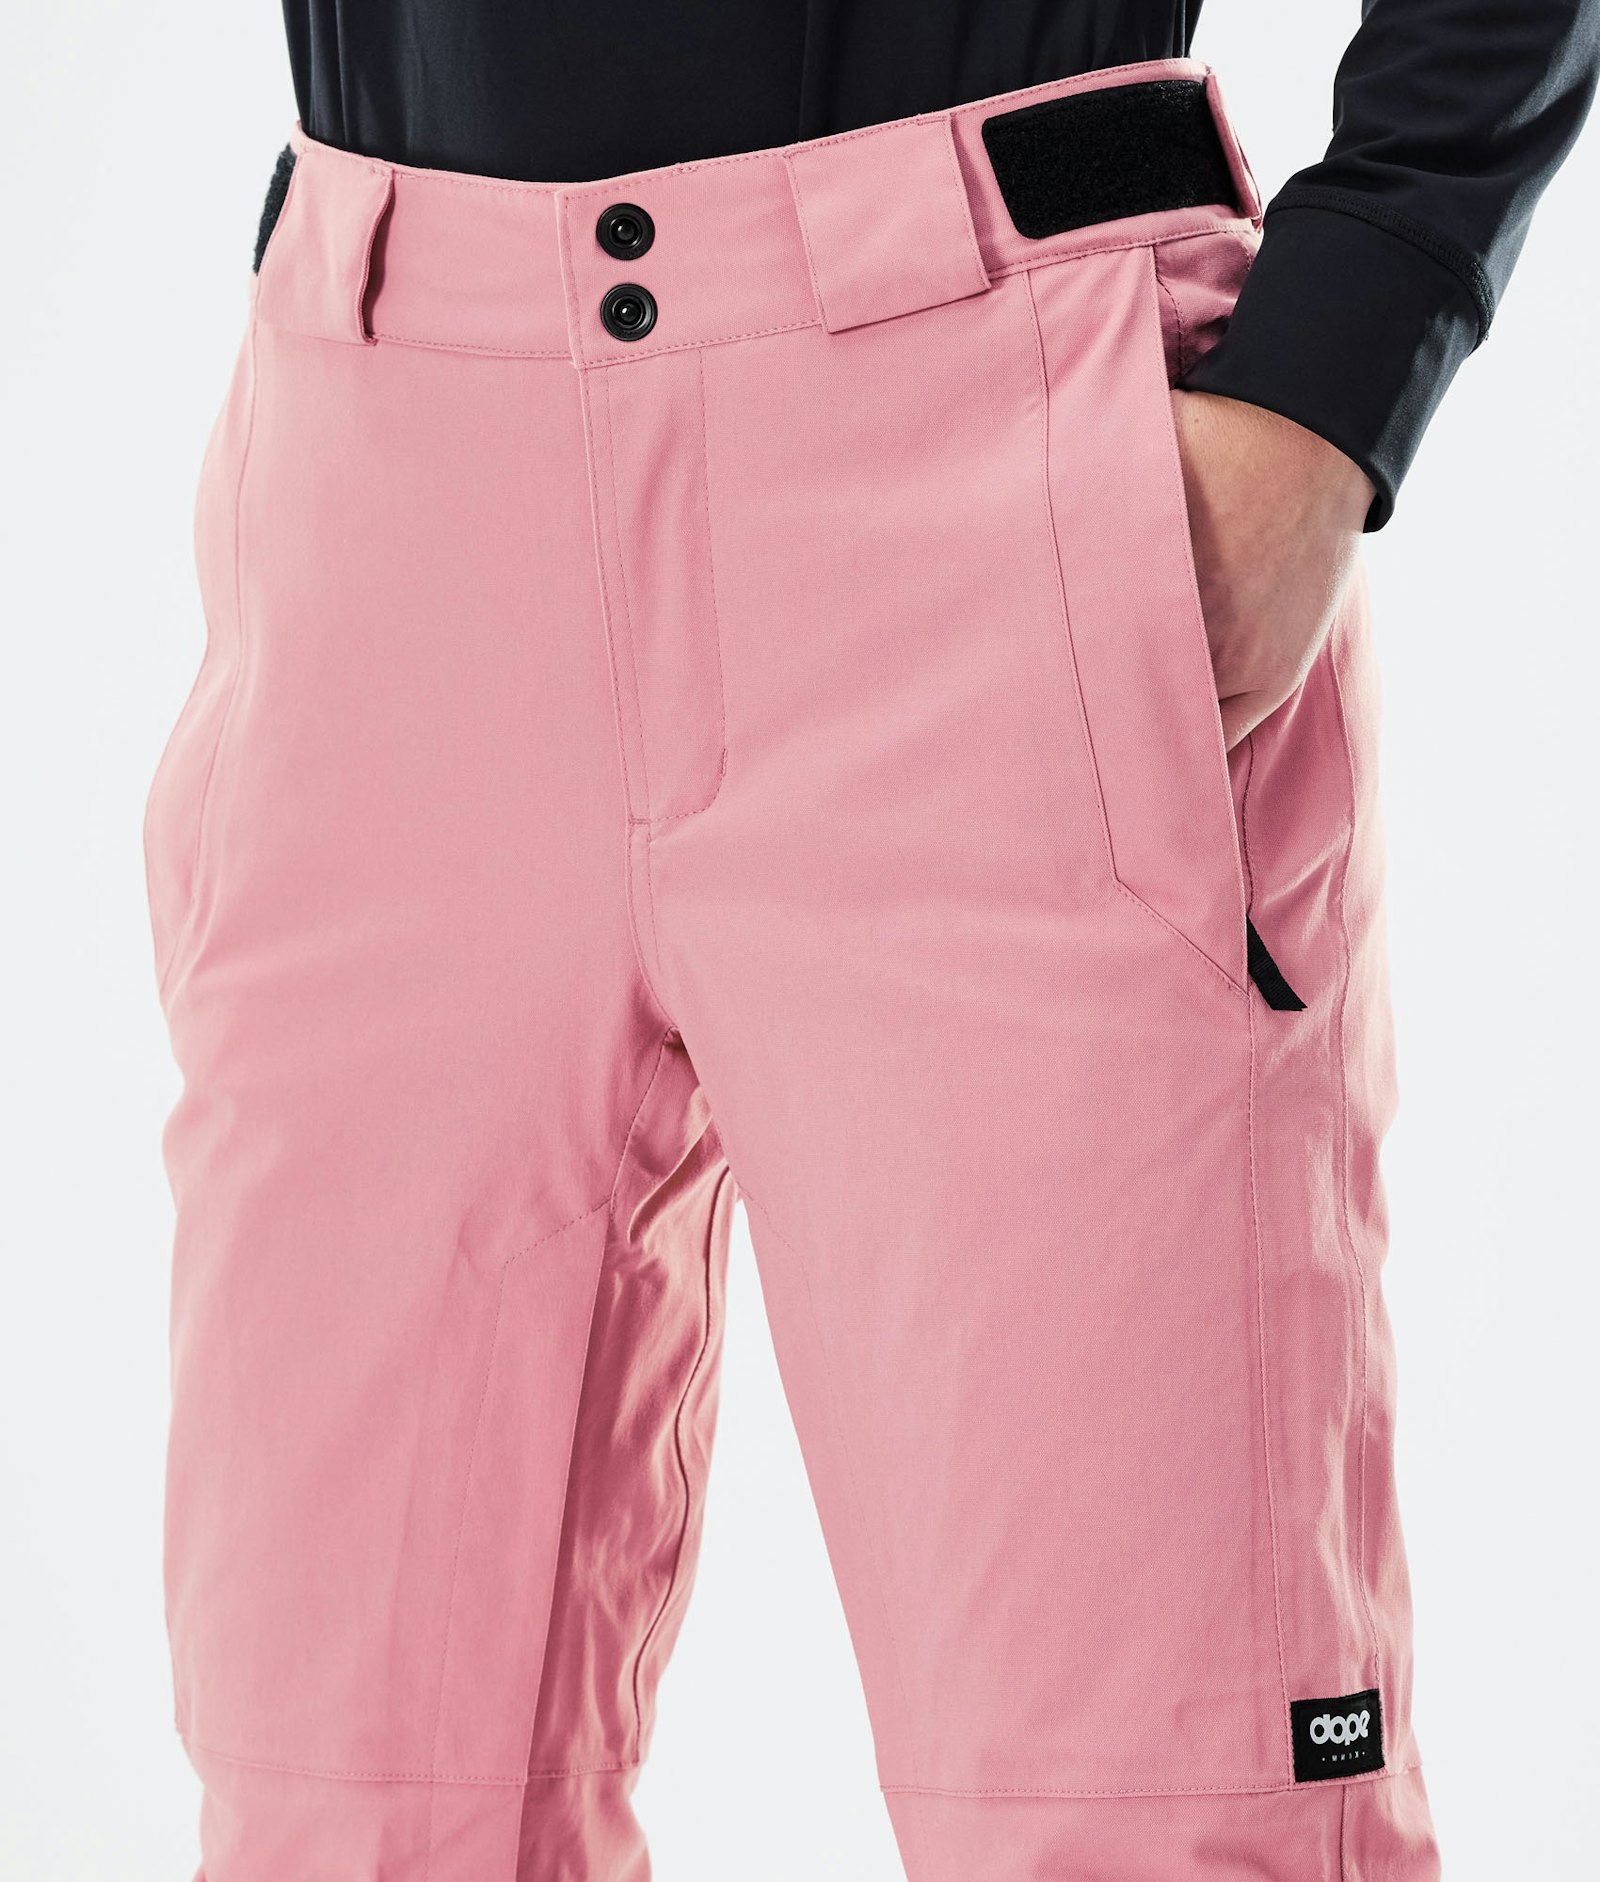 Con W 2020 Pantalon de Ski Femme Pink